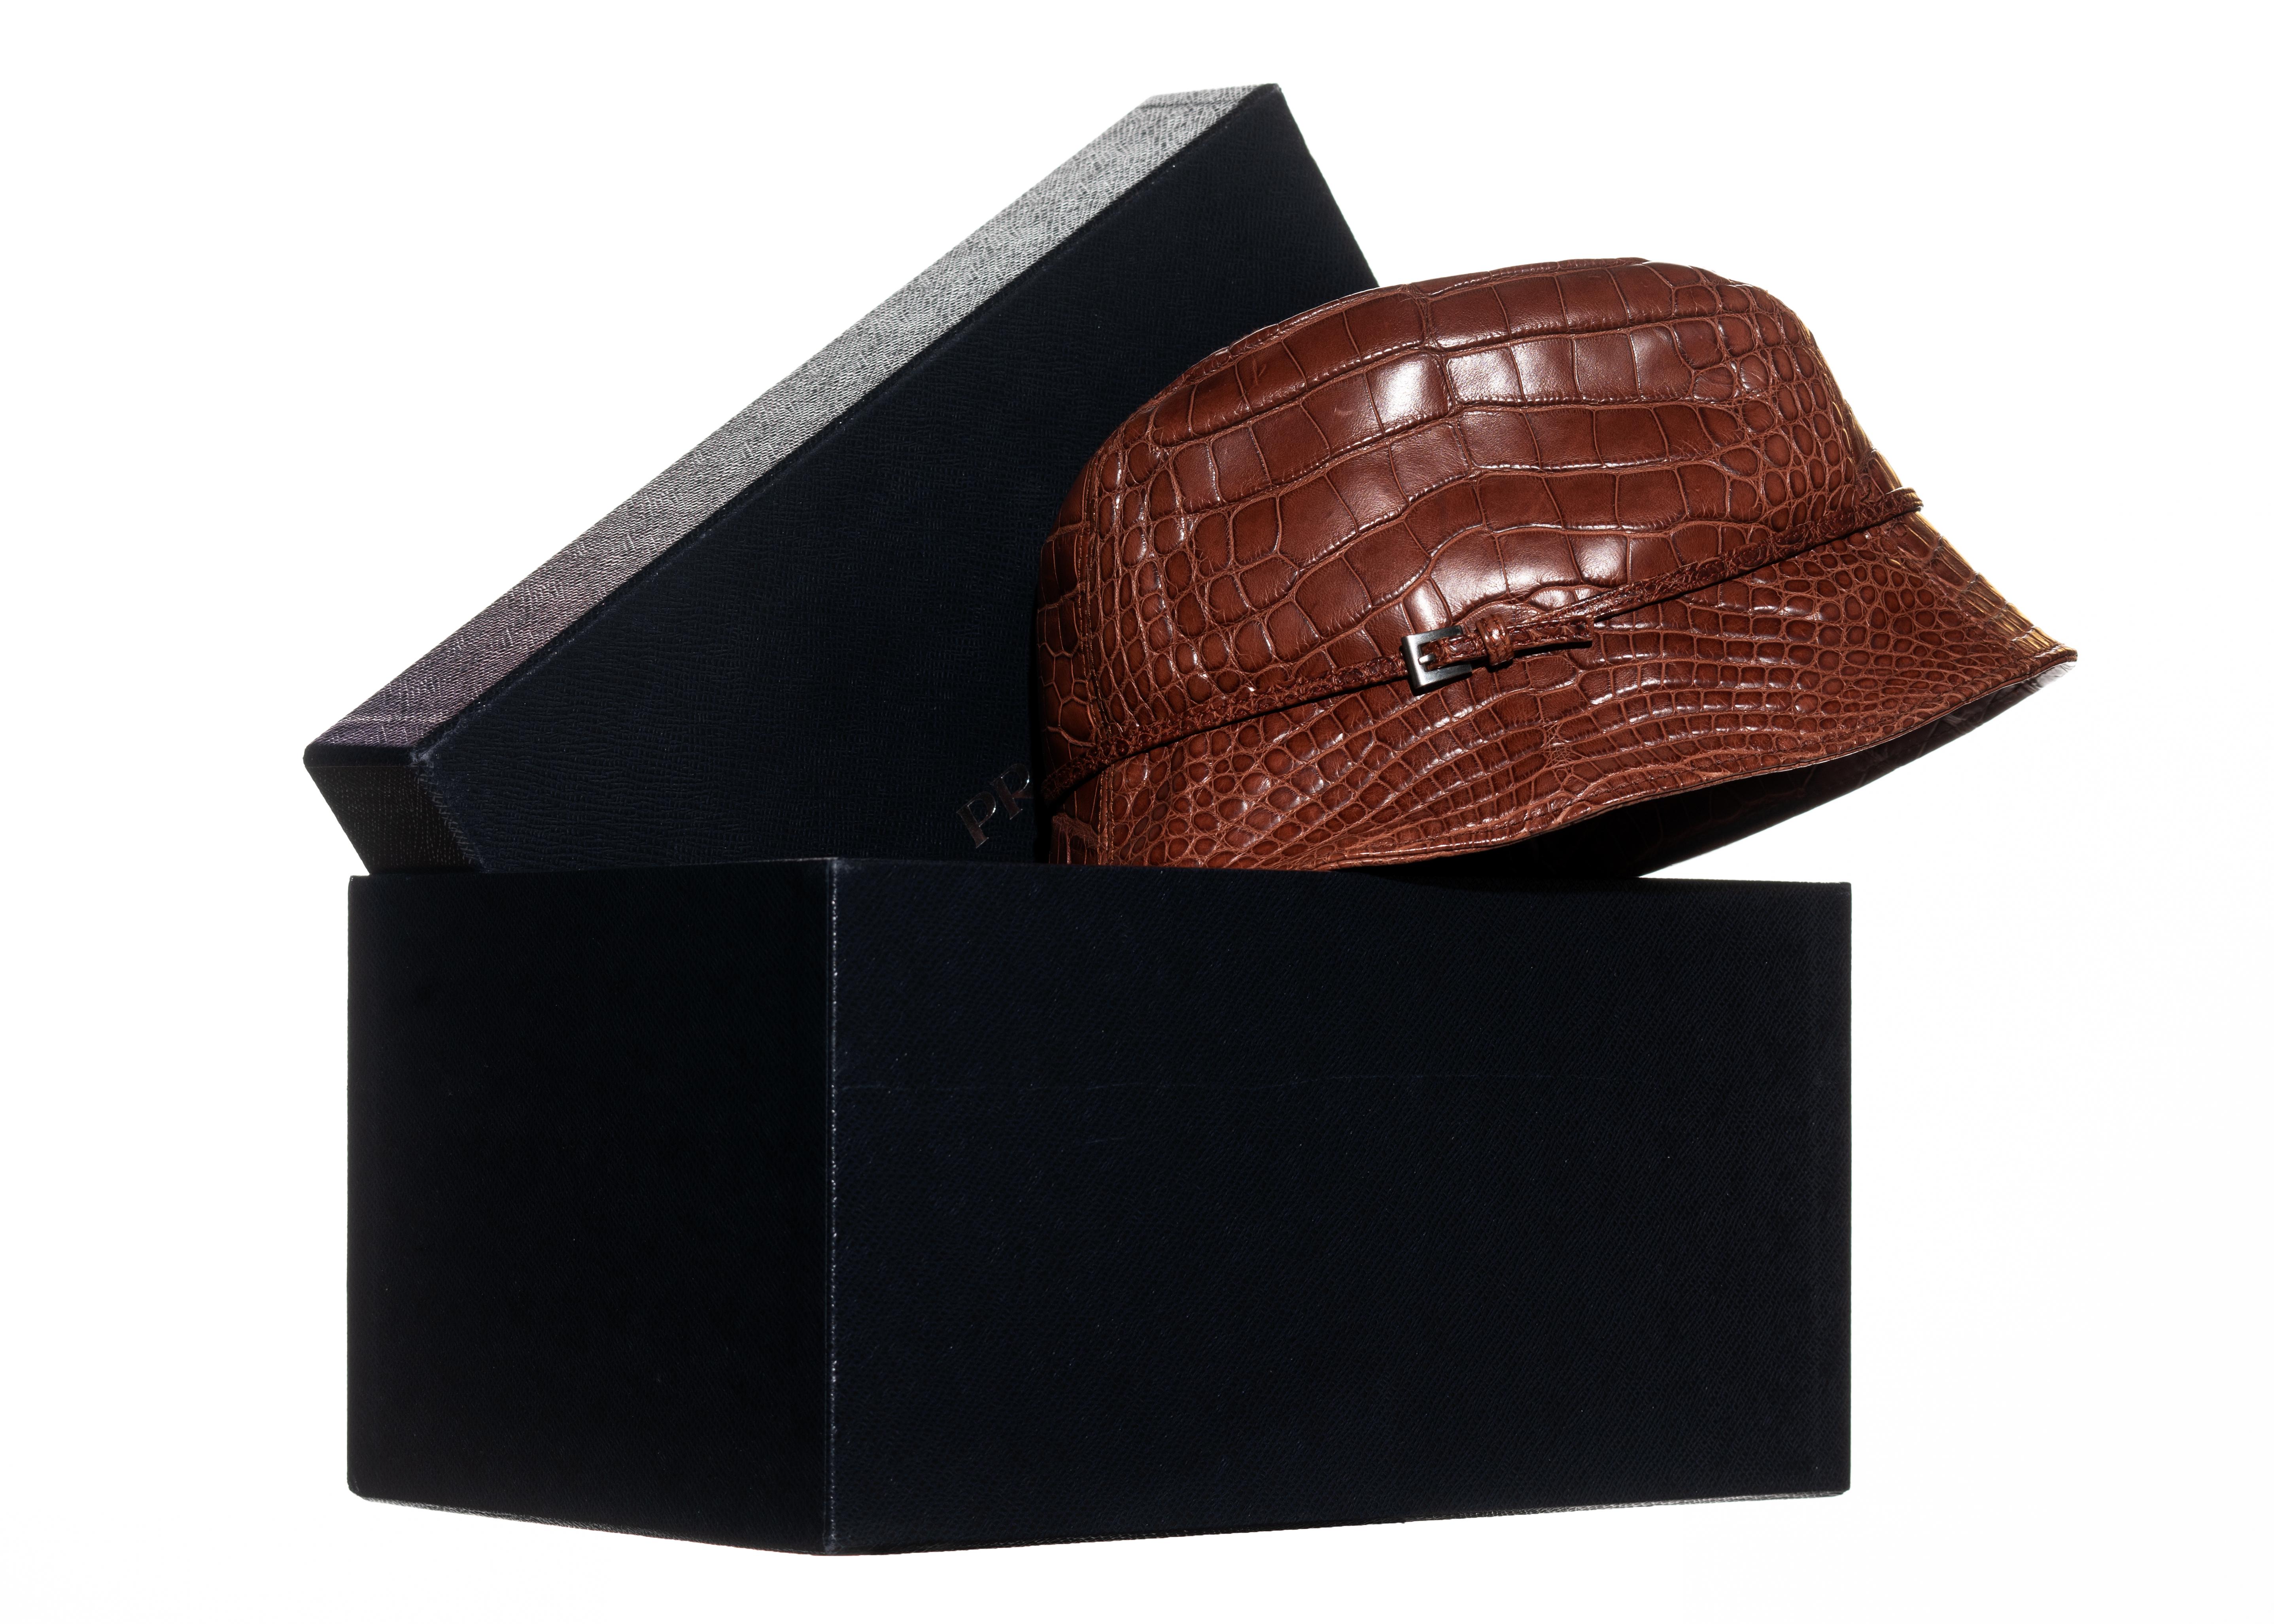 ▪ Prada chapeau seau en alligator brun
▪ Boucle métallique 
▪ Edition limitée
▪ Doublure en nylon 
▪ Livré avec boîte à chapeau Prada
▪ Taille moyenne
▪ Automne-Hiver 2003